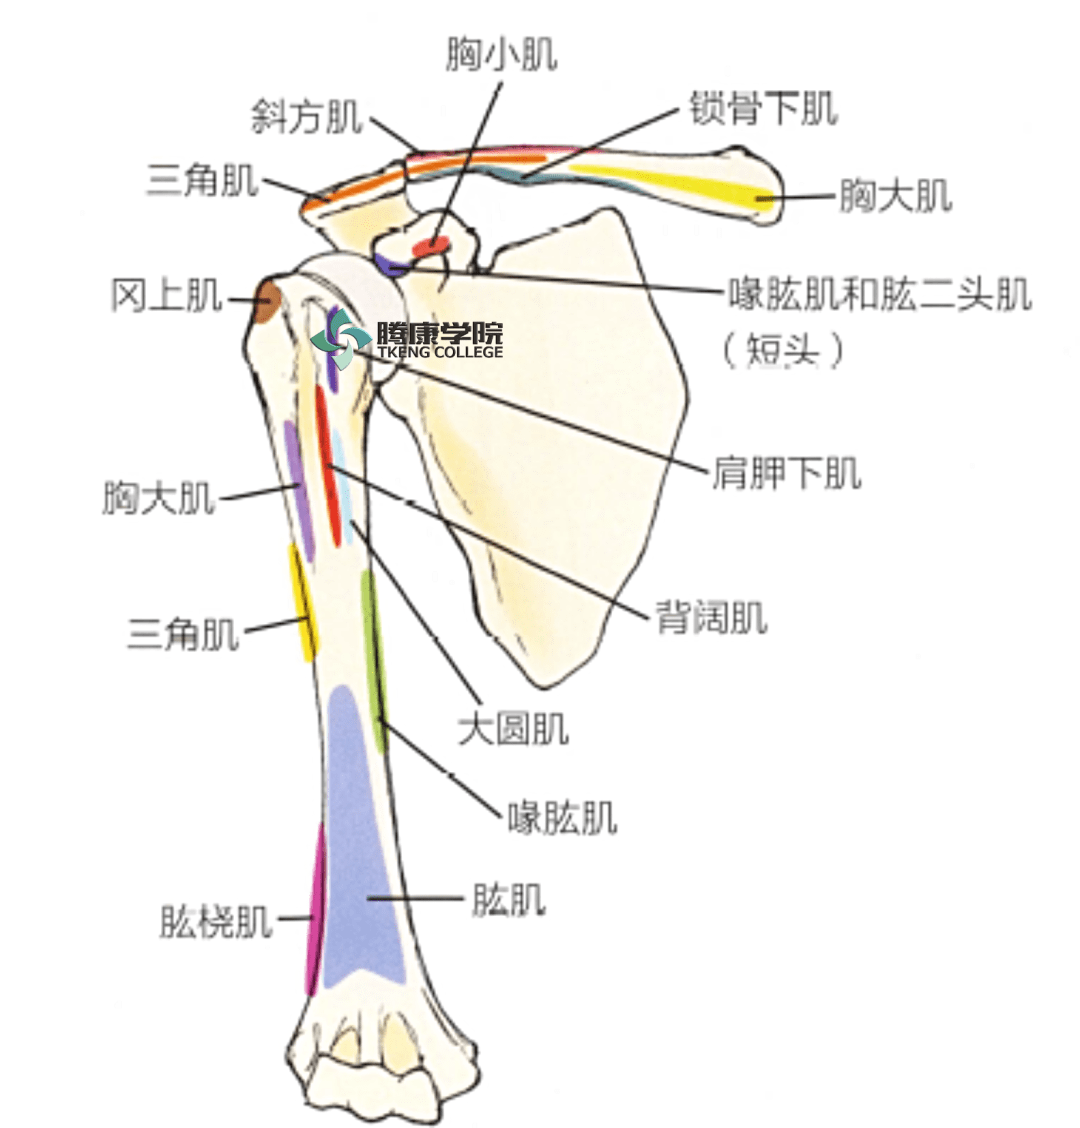 松解肱骨前方的关节囊和肌肉的附着处移动指尖至肩锁关节,针对肩锁